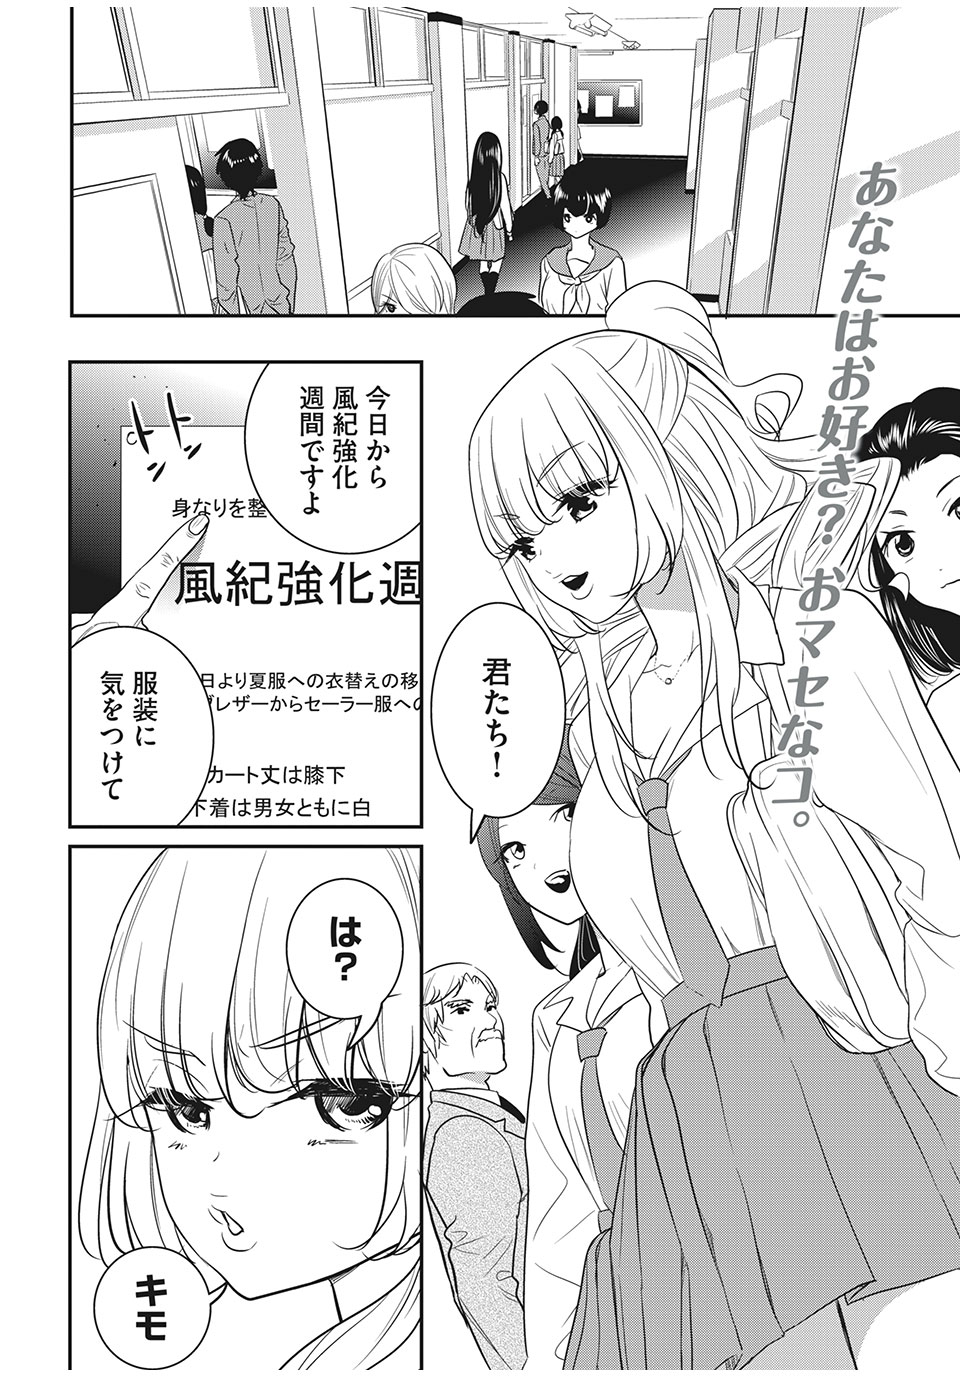 Eigo ×× Sensei - Chapter 8 - Page 2